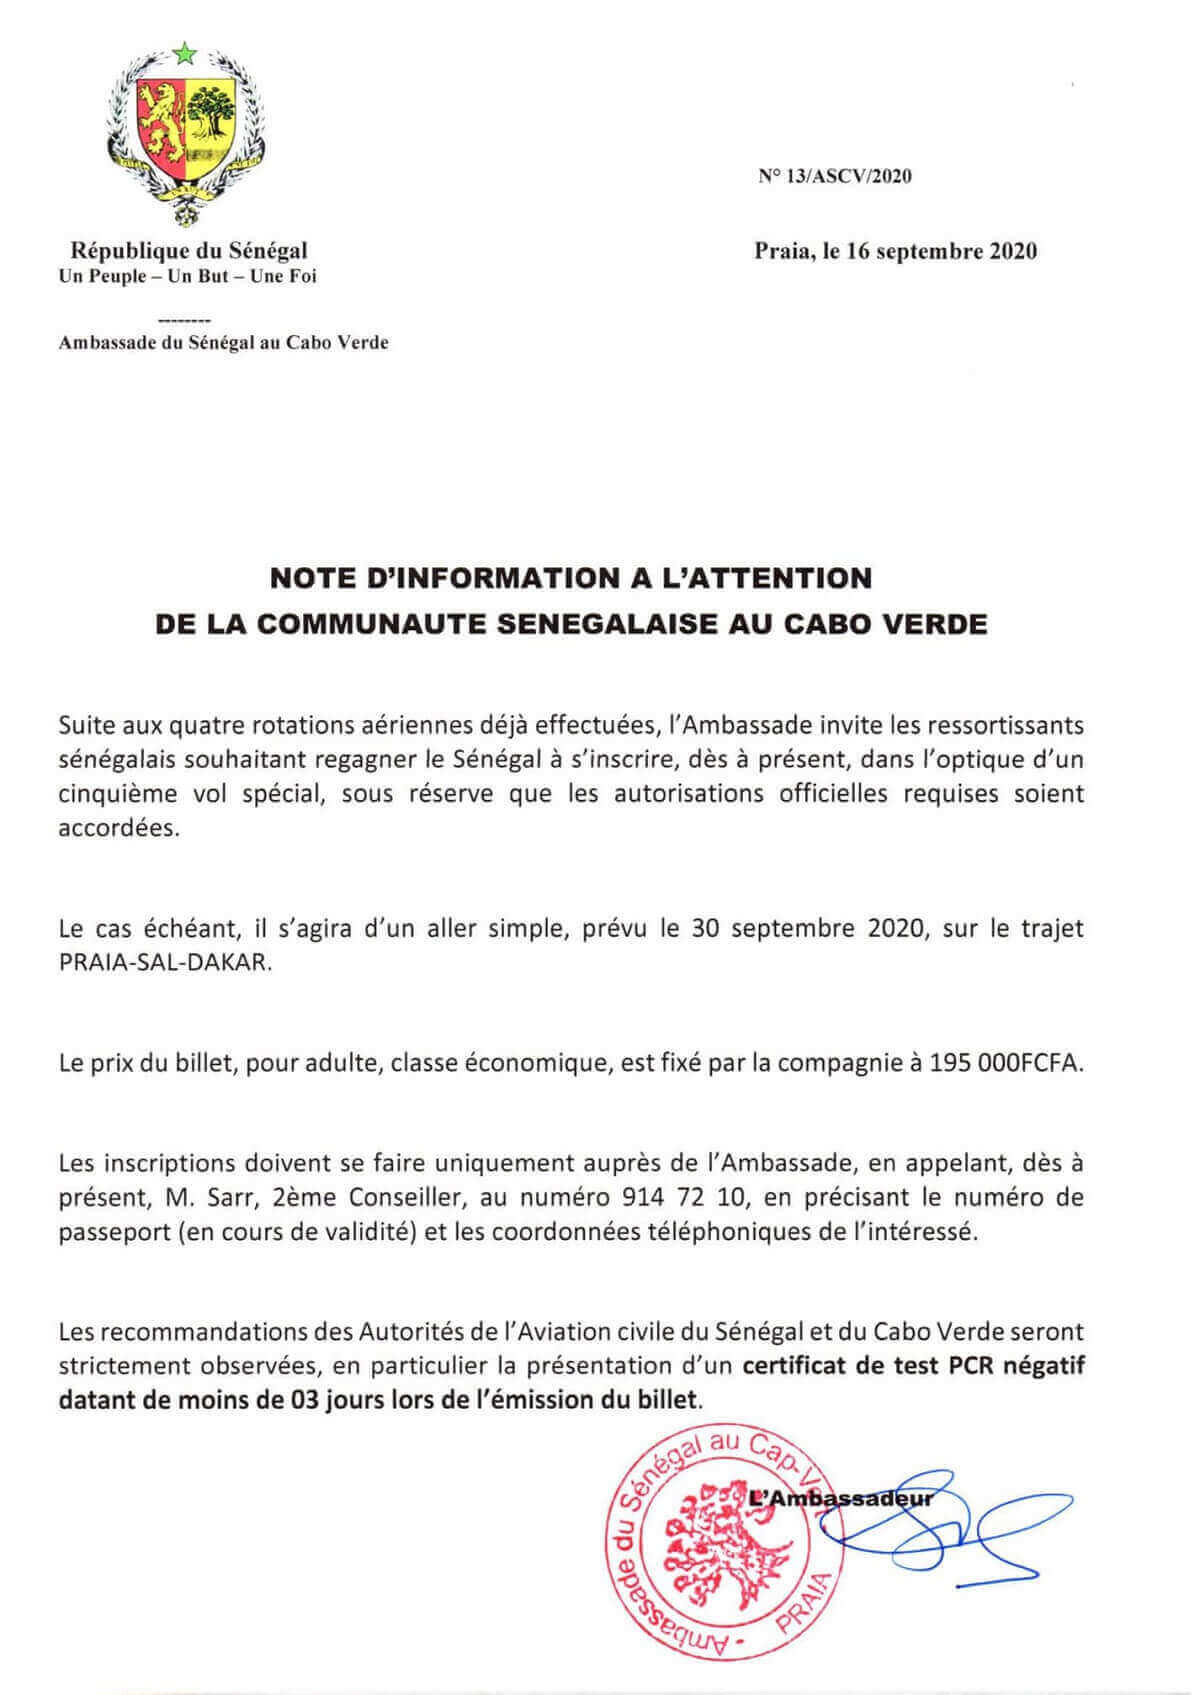 Note d'information de la communauté sénégalaise de Cabo Verde